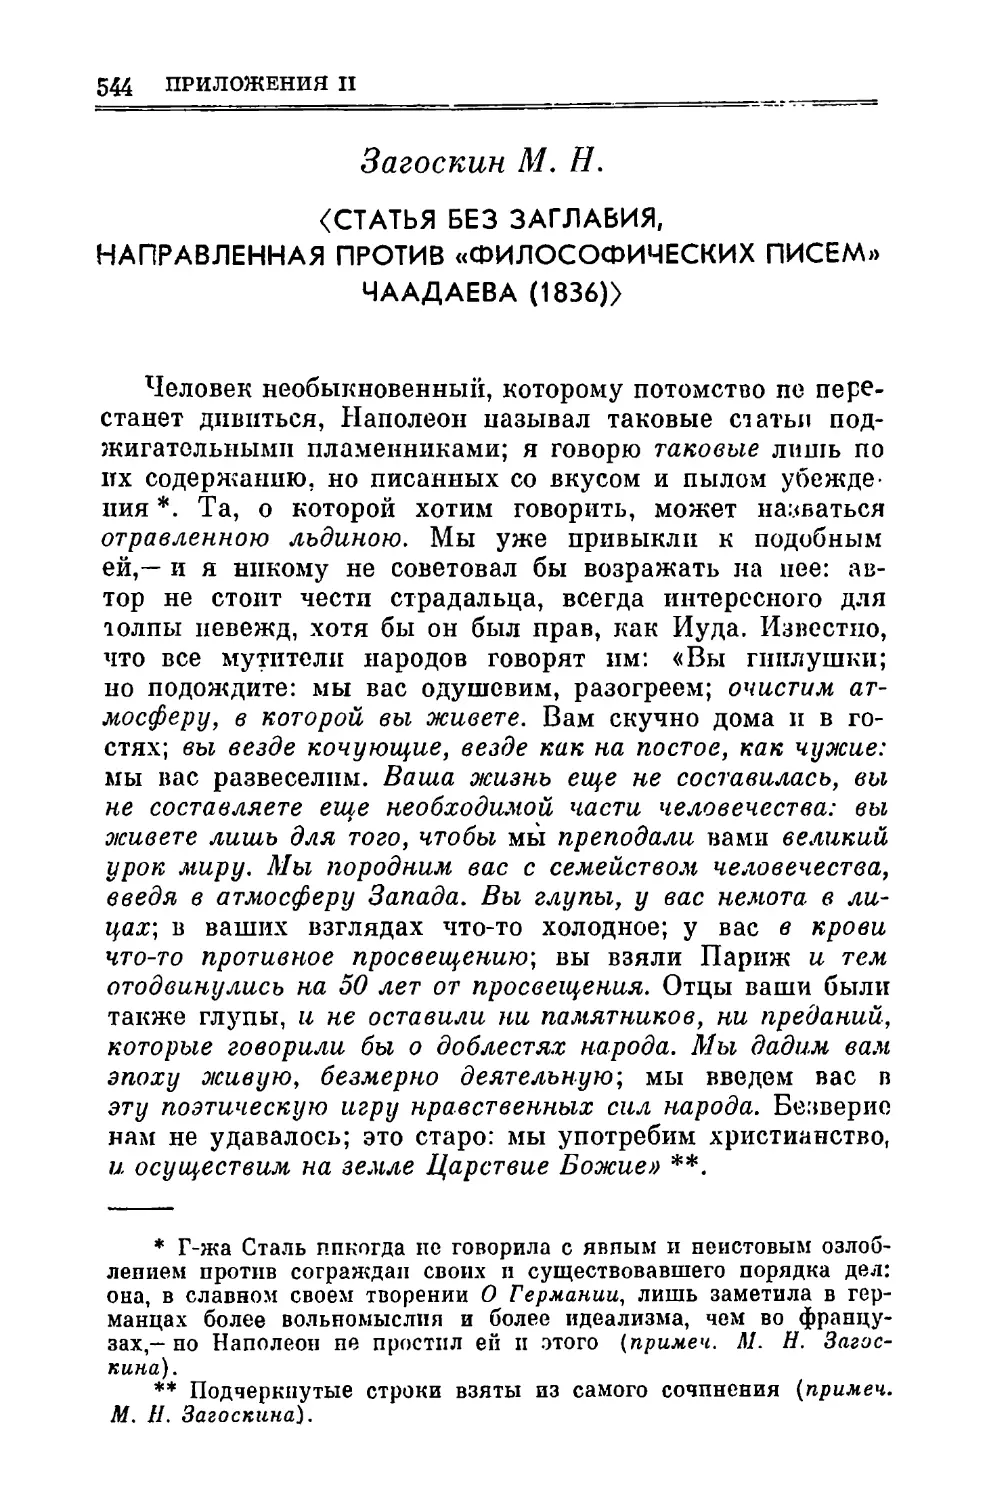 Загоскин М. Н. Статья без заглавия, направленная против «Философических писем» Чаадаева. 1836